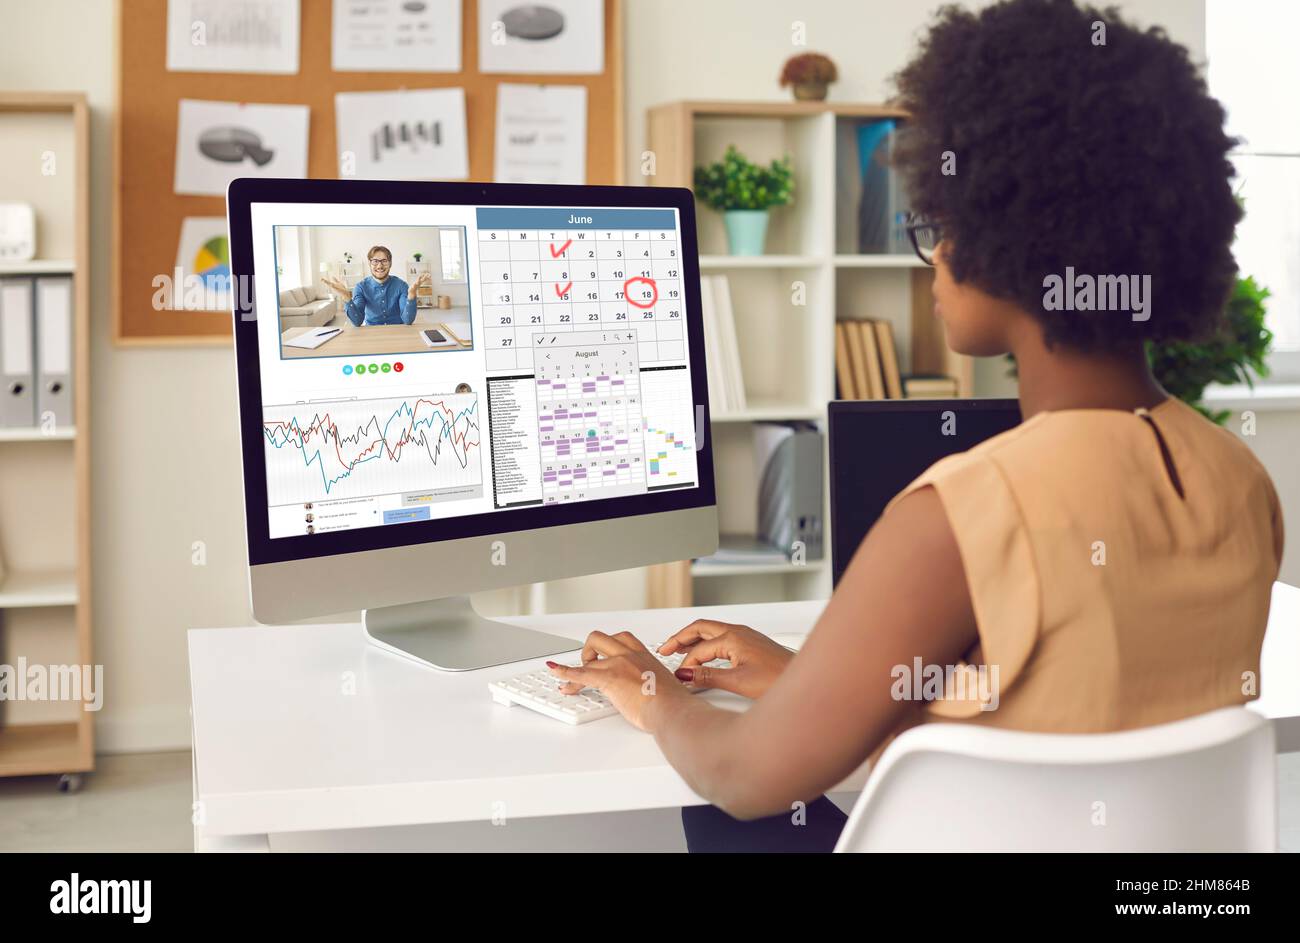 Femme noire travaillant sur un ordinateur de bureau, utilisant l'application de calendrier et ayant un appel vidéo Banque D'Images